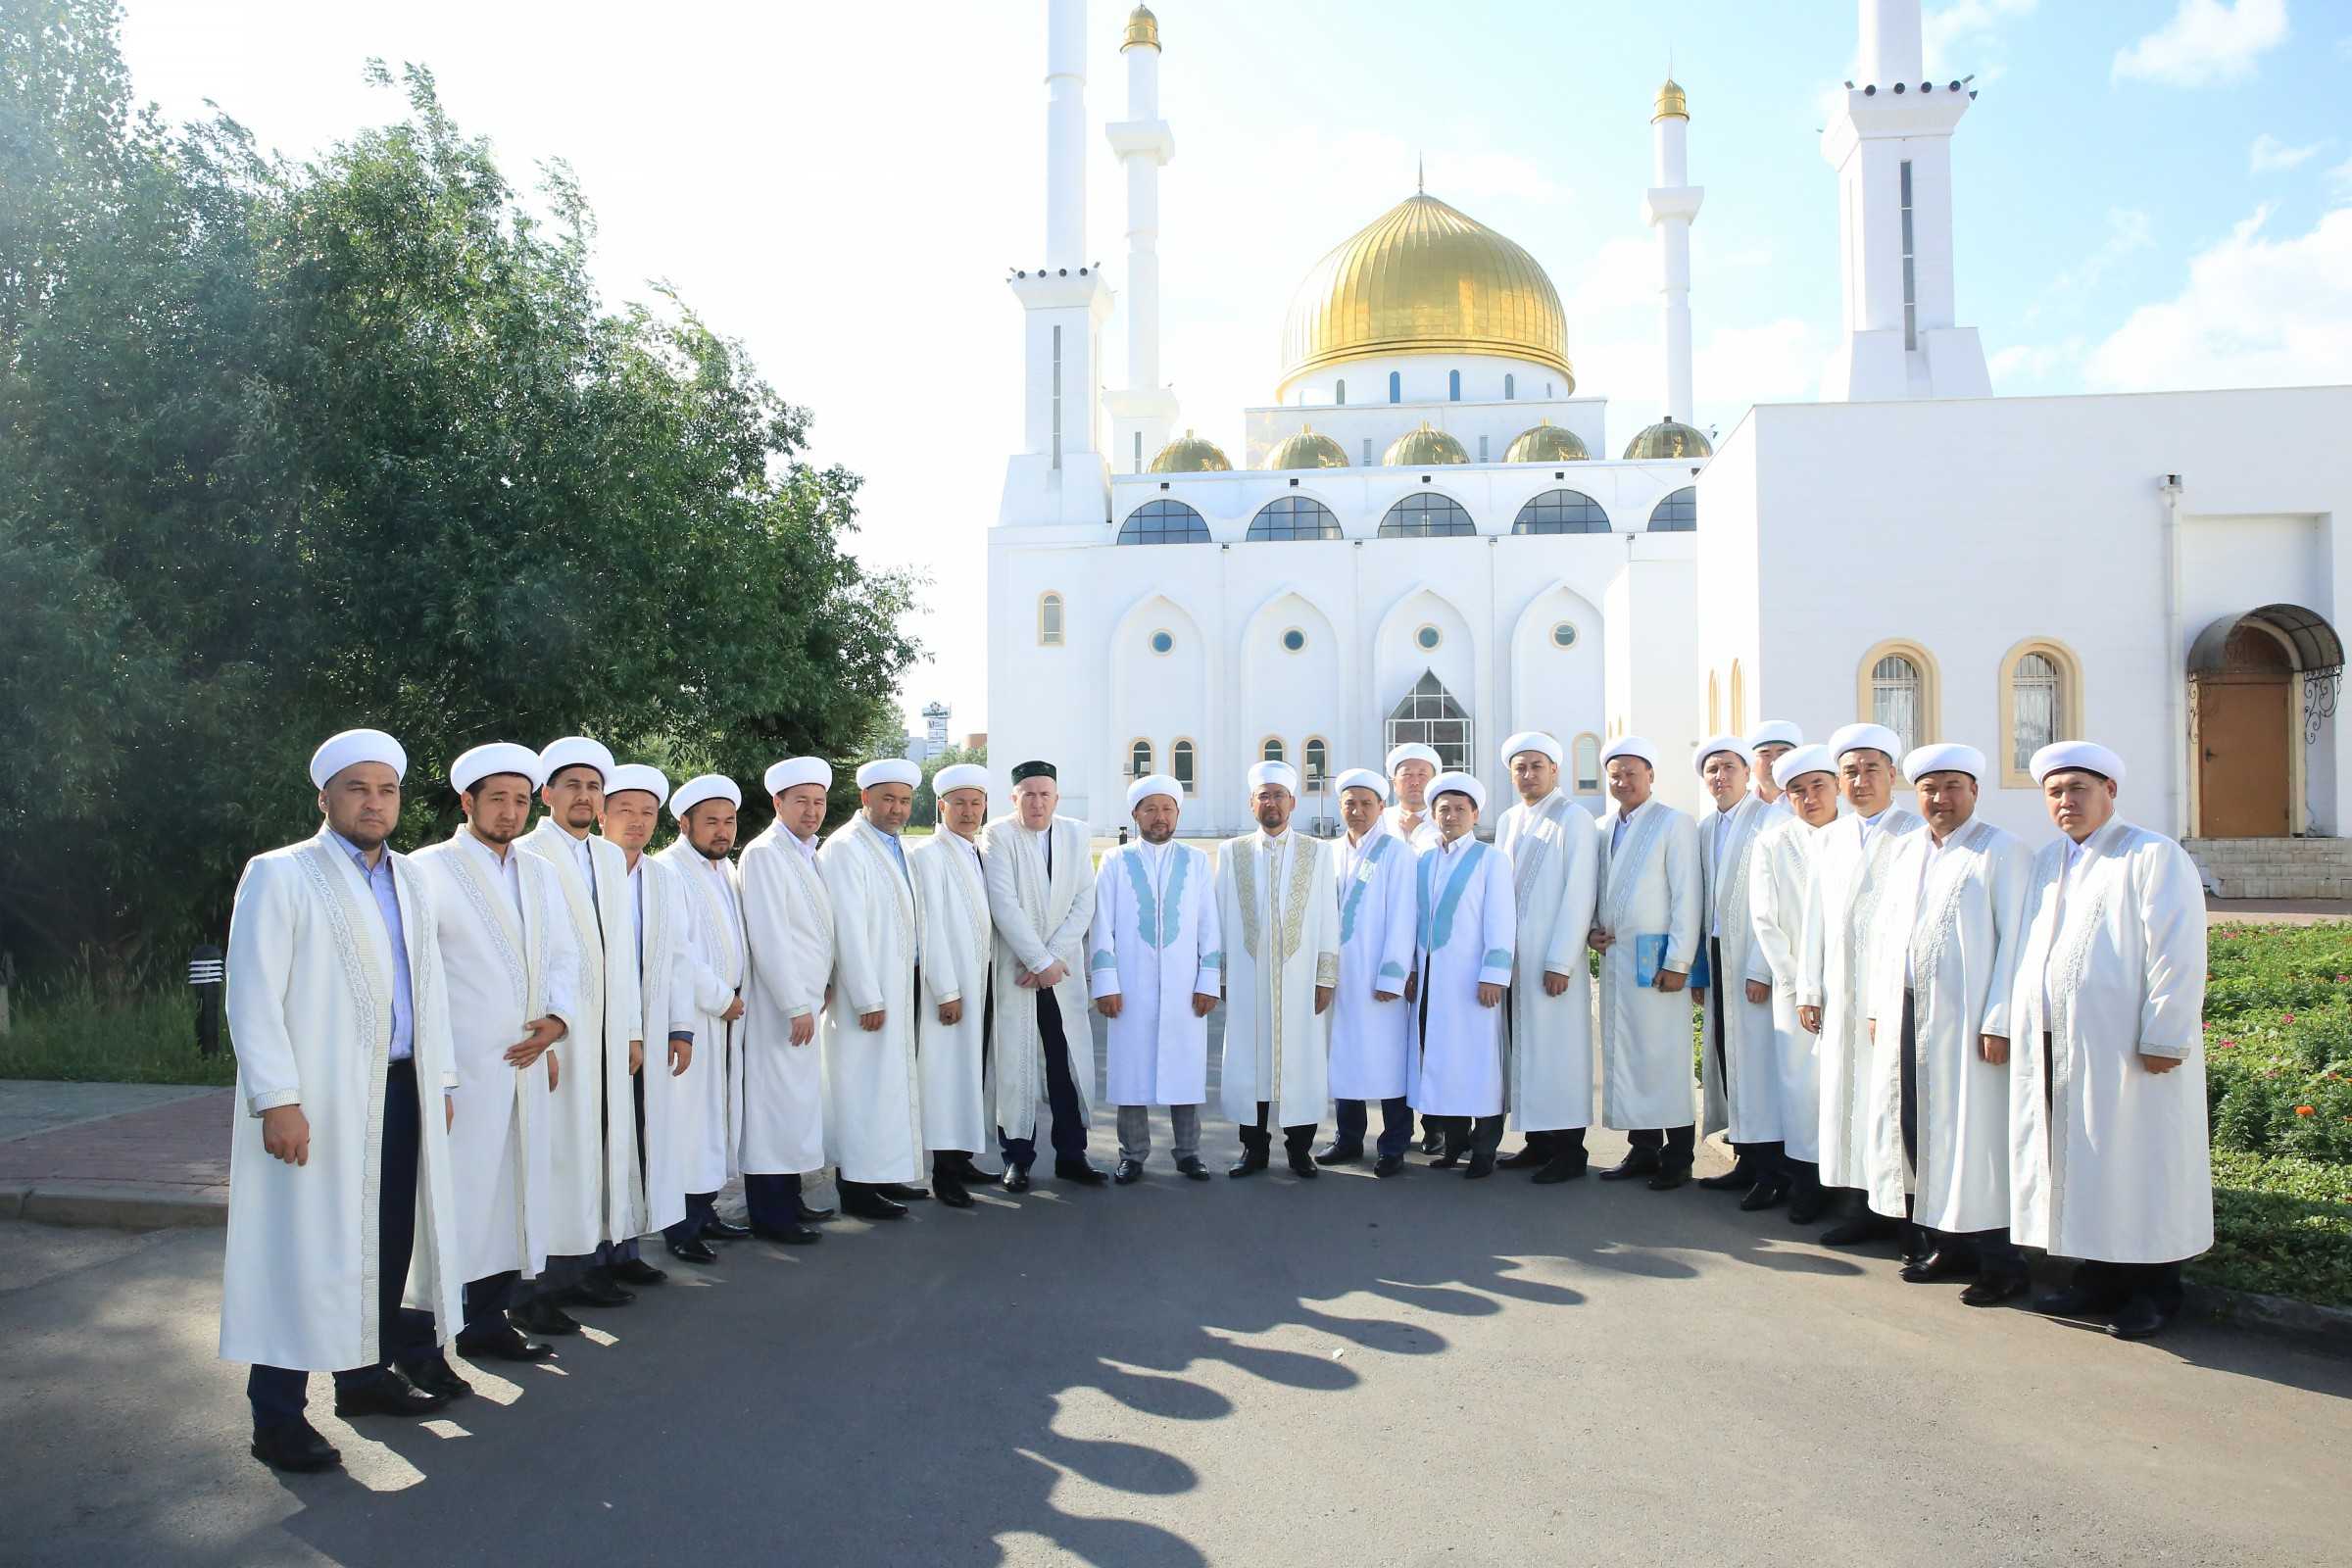 Соотношение светской и религиозной культуры в республике казахстан: традиция и современность